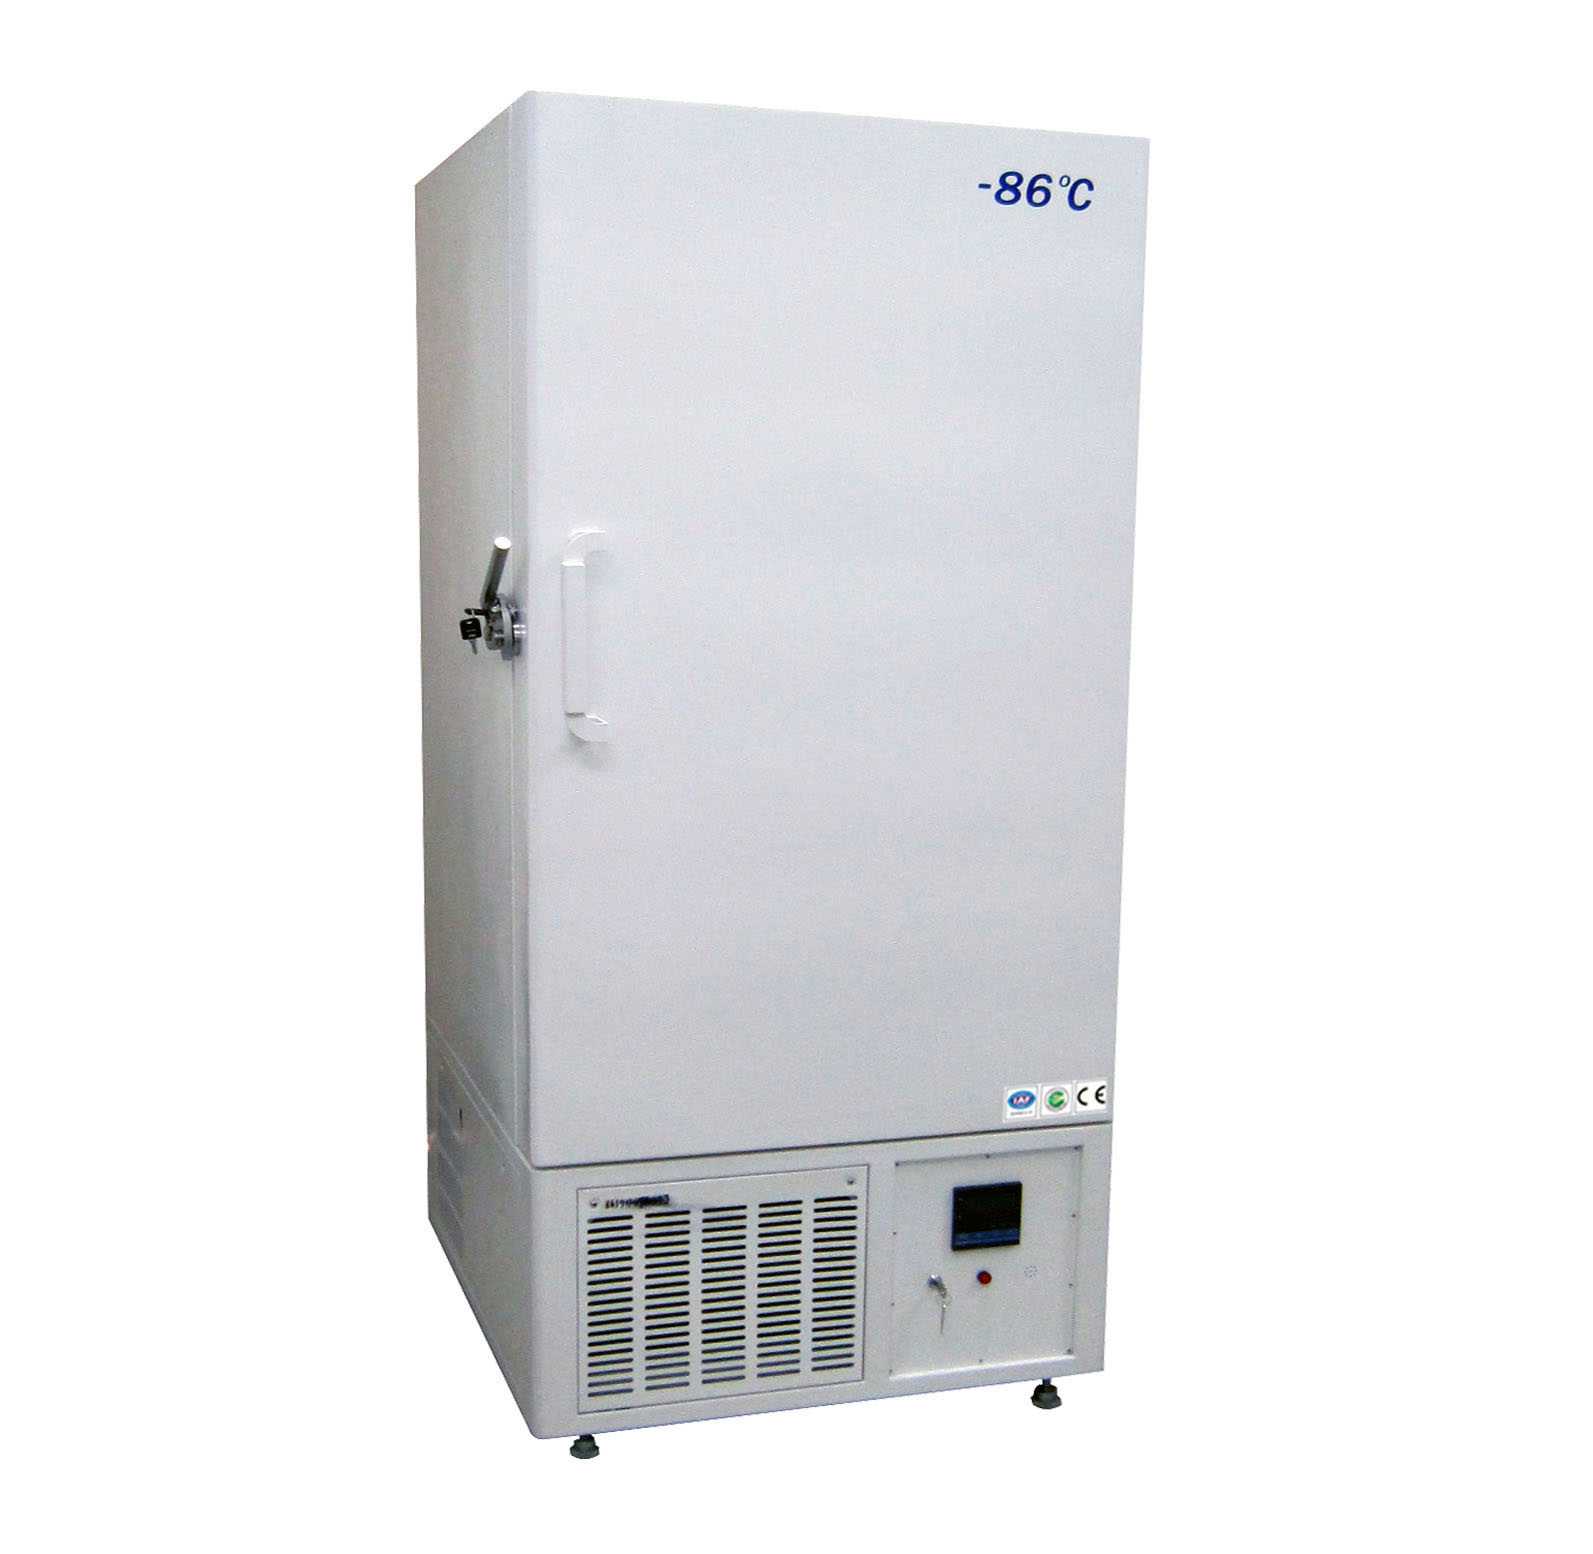 超低温冰箱TH-60-340-LA、TH-60-150-WA、TH-86-150-WA、TH-86-340-LA、TH-86-500-LA